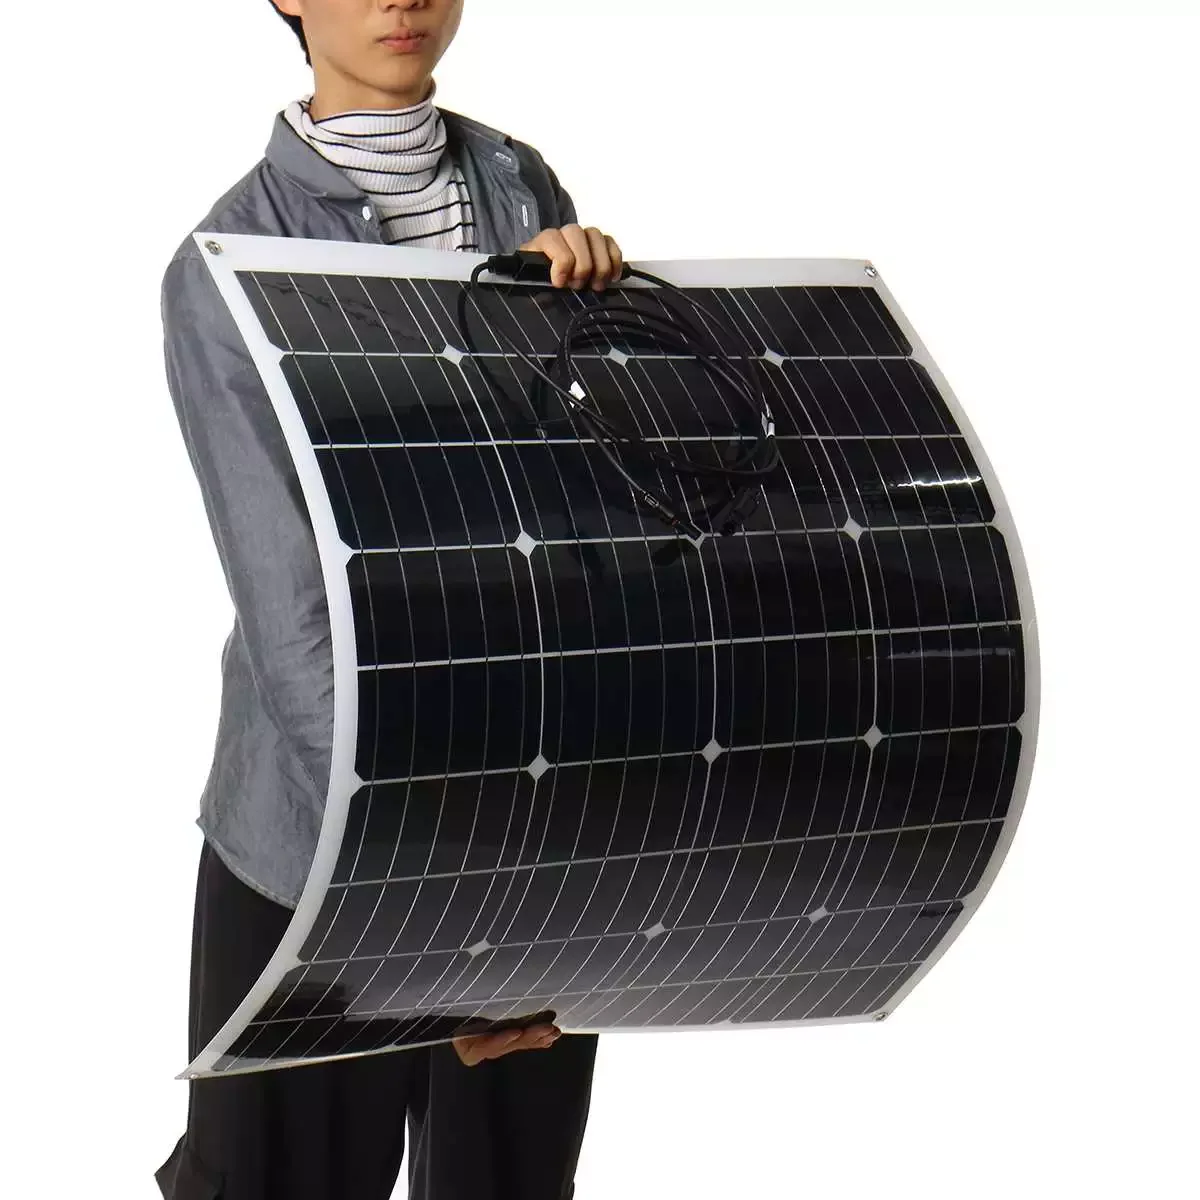 

Гибкая монокристаллическая солнечная панель 1000 Вт для автомобиля/лодки/дома, солнечная батарея может заряжать водонепроницаемую солнечну...